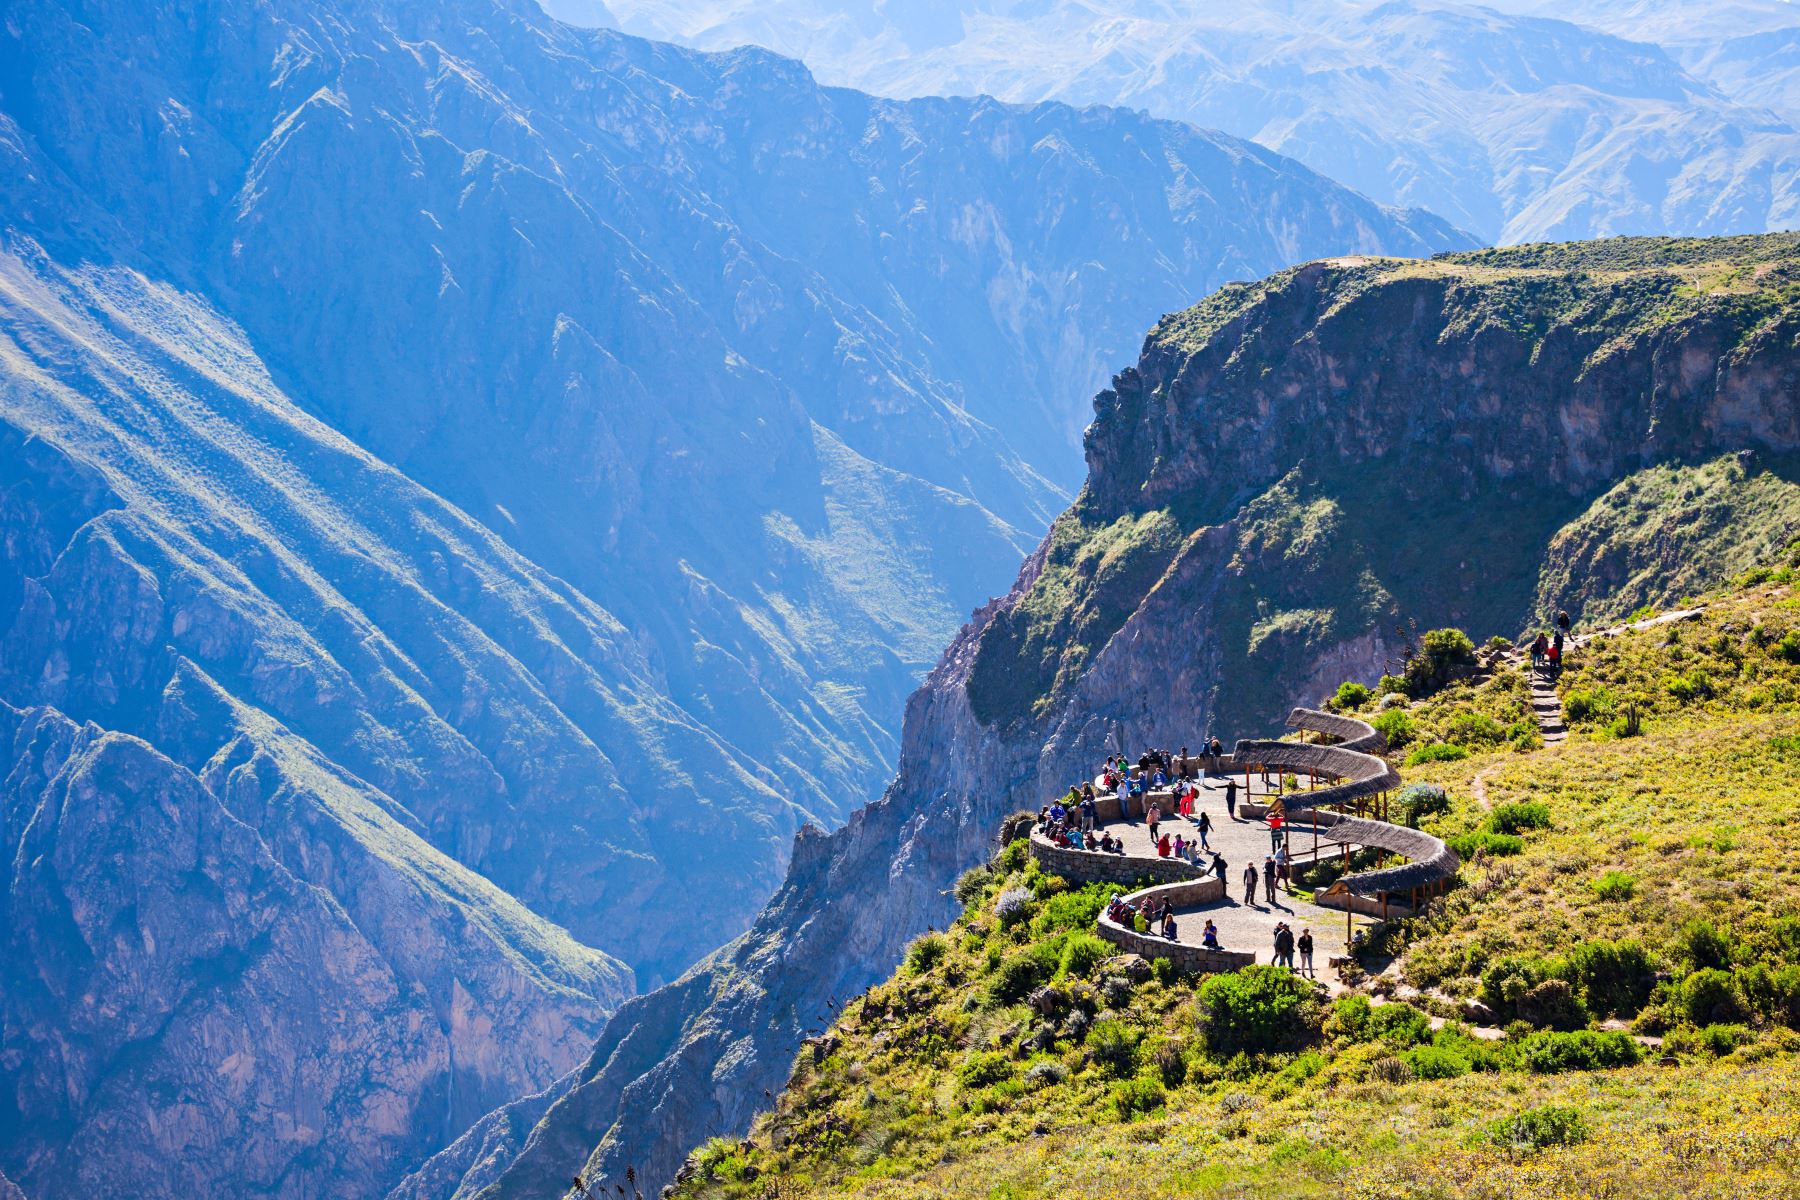 El Valle del Colca forma parte del Geoparque Colca y Volcanes de Andagua, declarado por la Organización de las Naciones Unidas para la Educación, Ciencia y Cultura (Unesco). Además, es considerado el primer Geoparque del Perú y el tercero de Sudamérica, al formar parte de la Red Internacional de Geoparques Mundiales.
Foto: ANDINA/MINCETUR